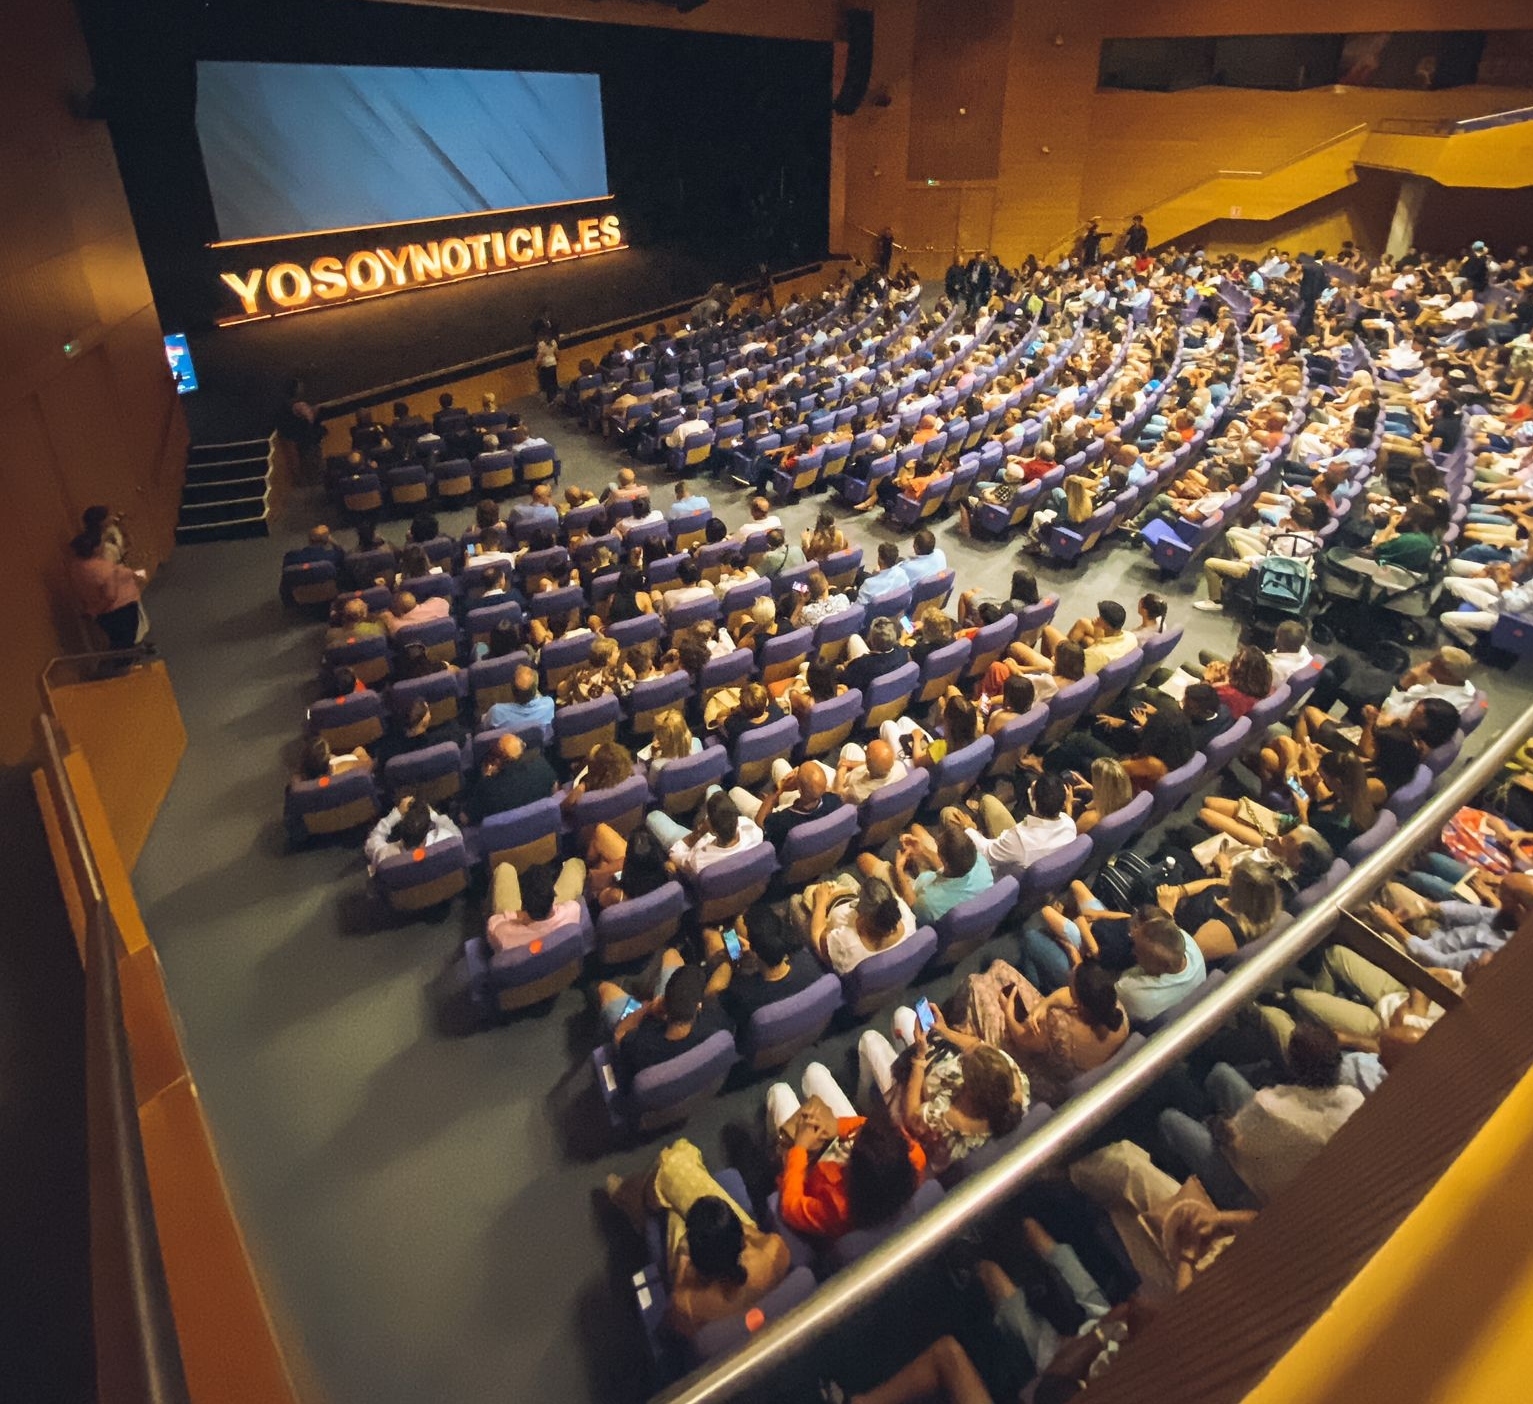 Imagen del auditorio del Palacio de Congresos durante la gala de YoSoyNoticia.es